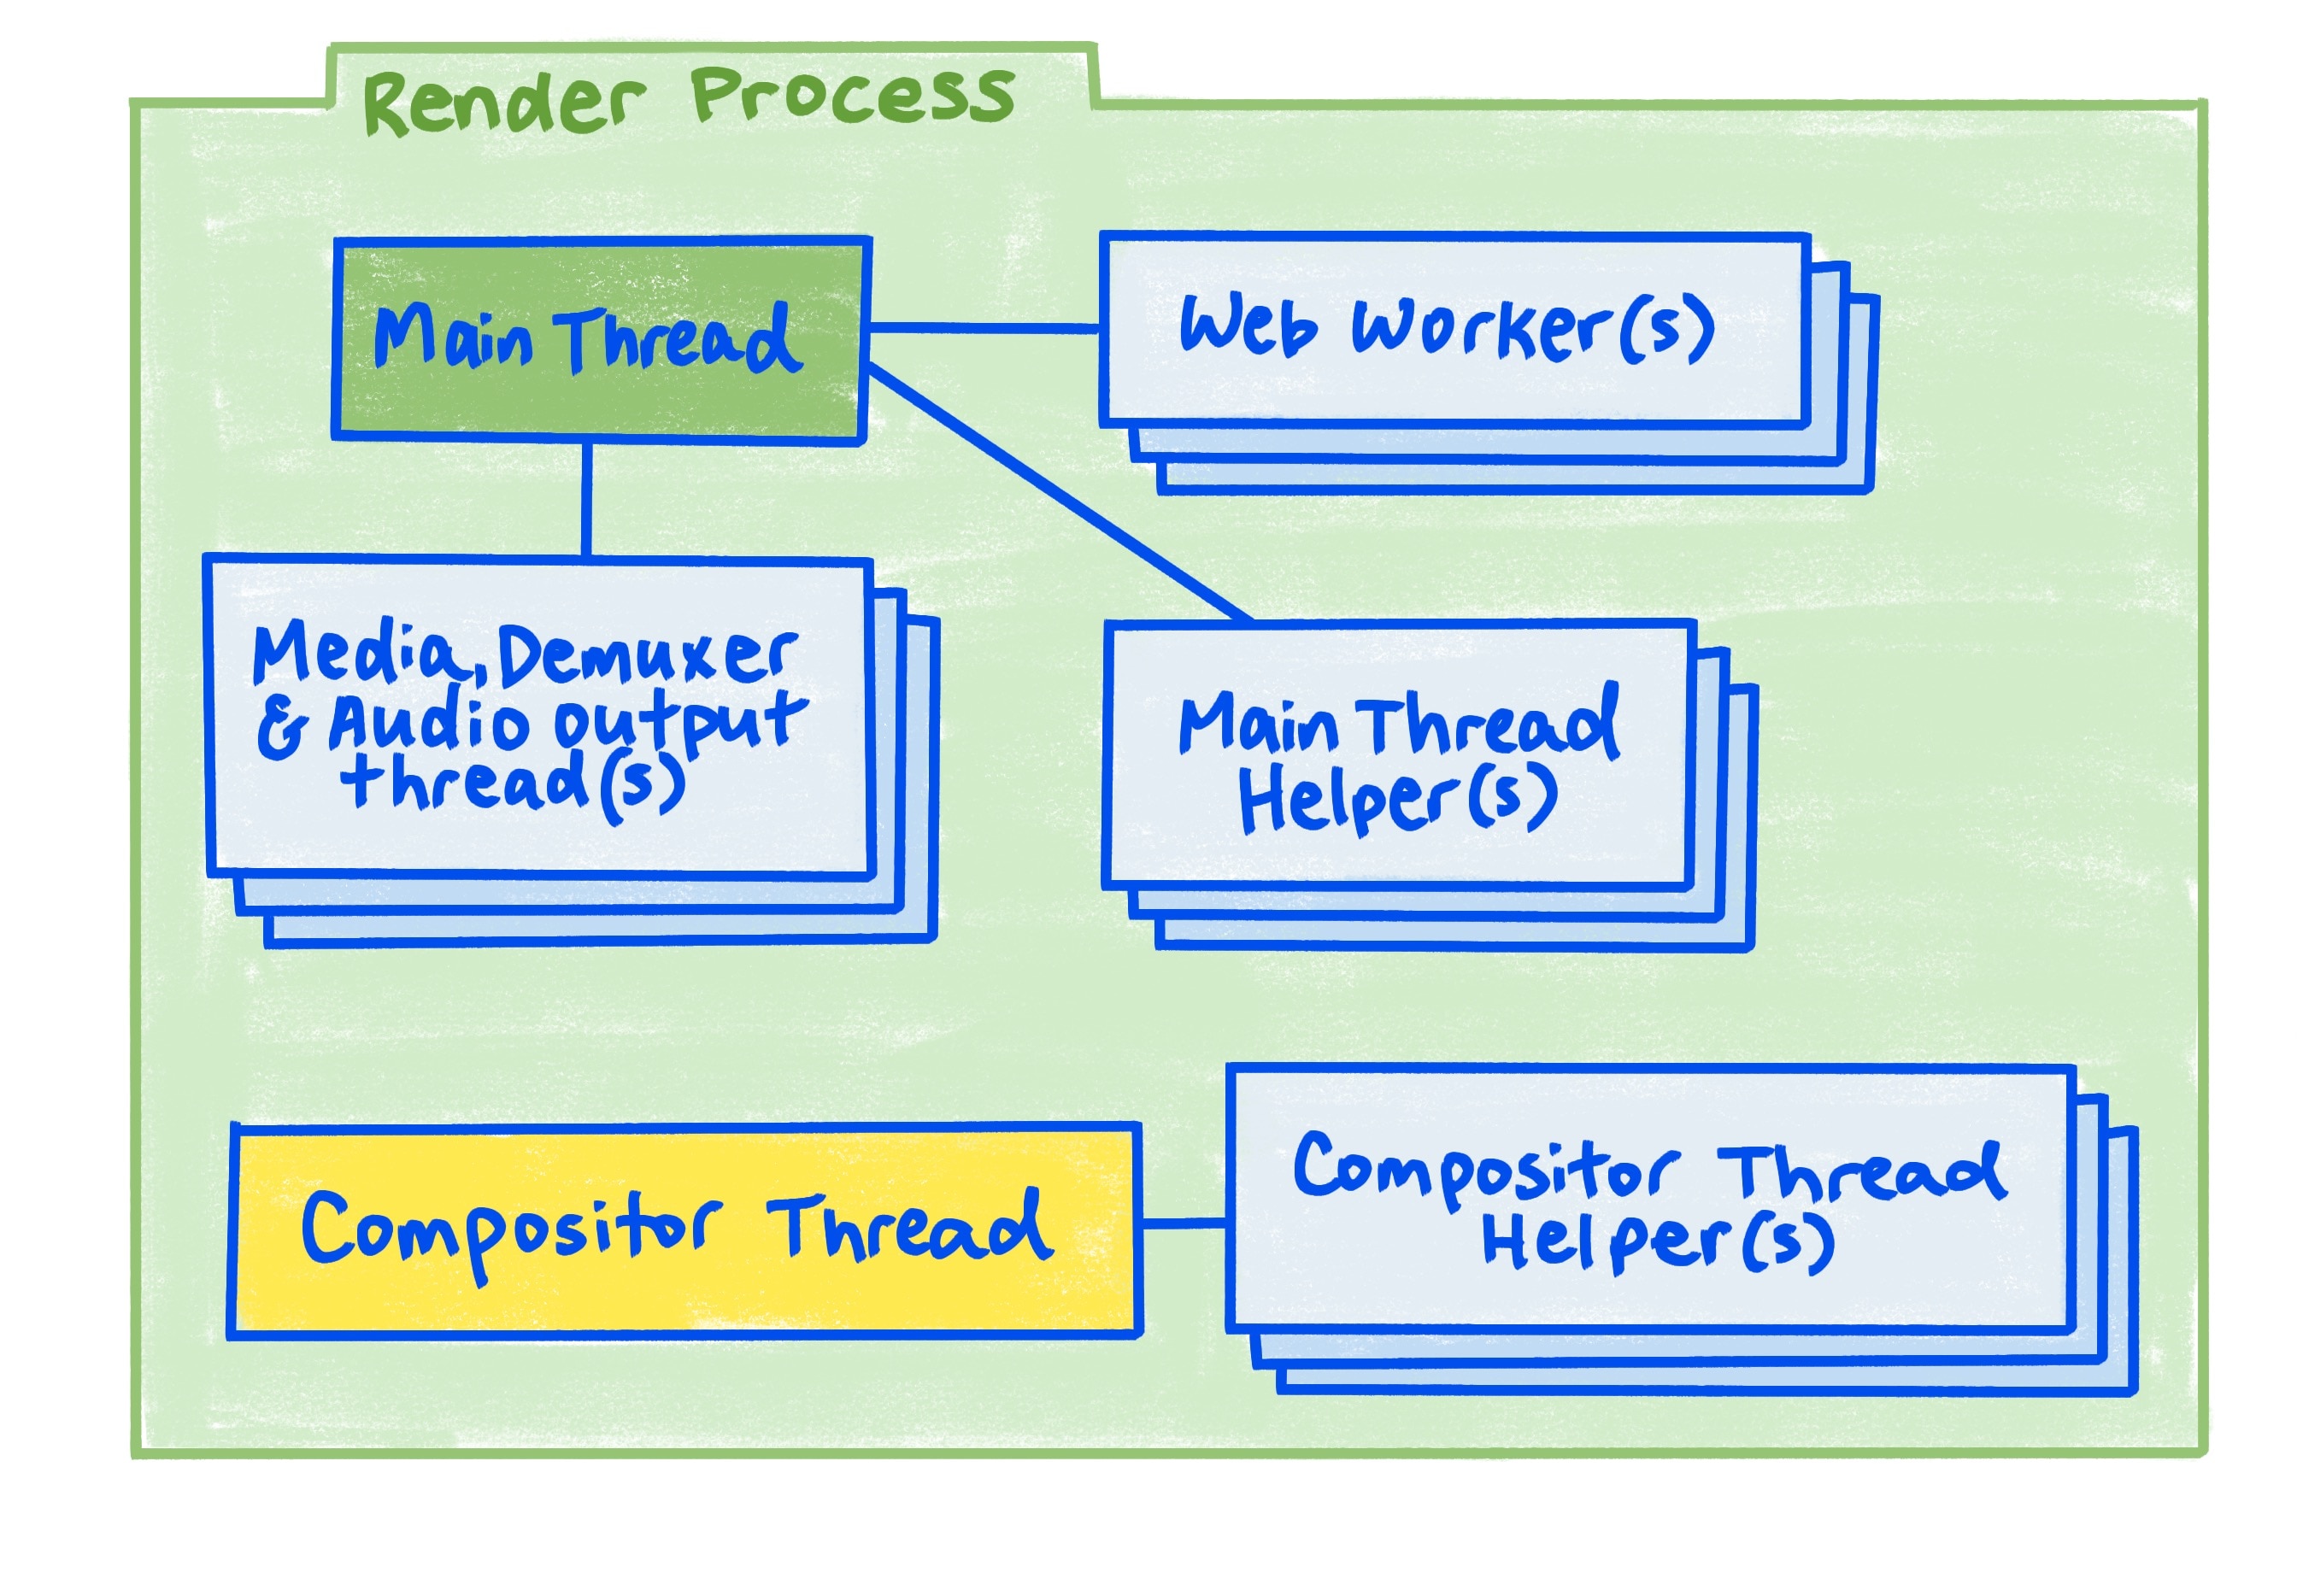 Diagrama del proceso de renderización como se describe en el artículo.